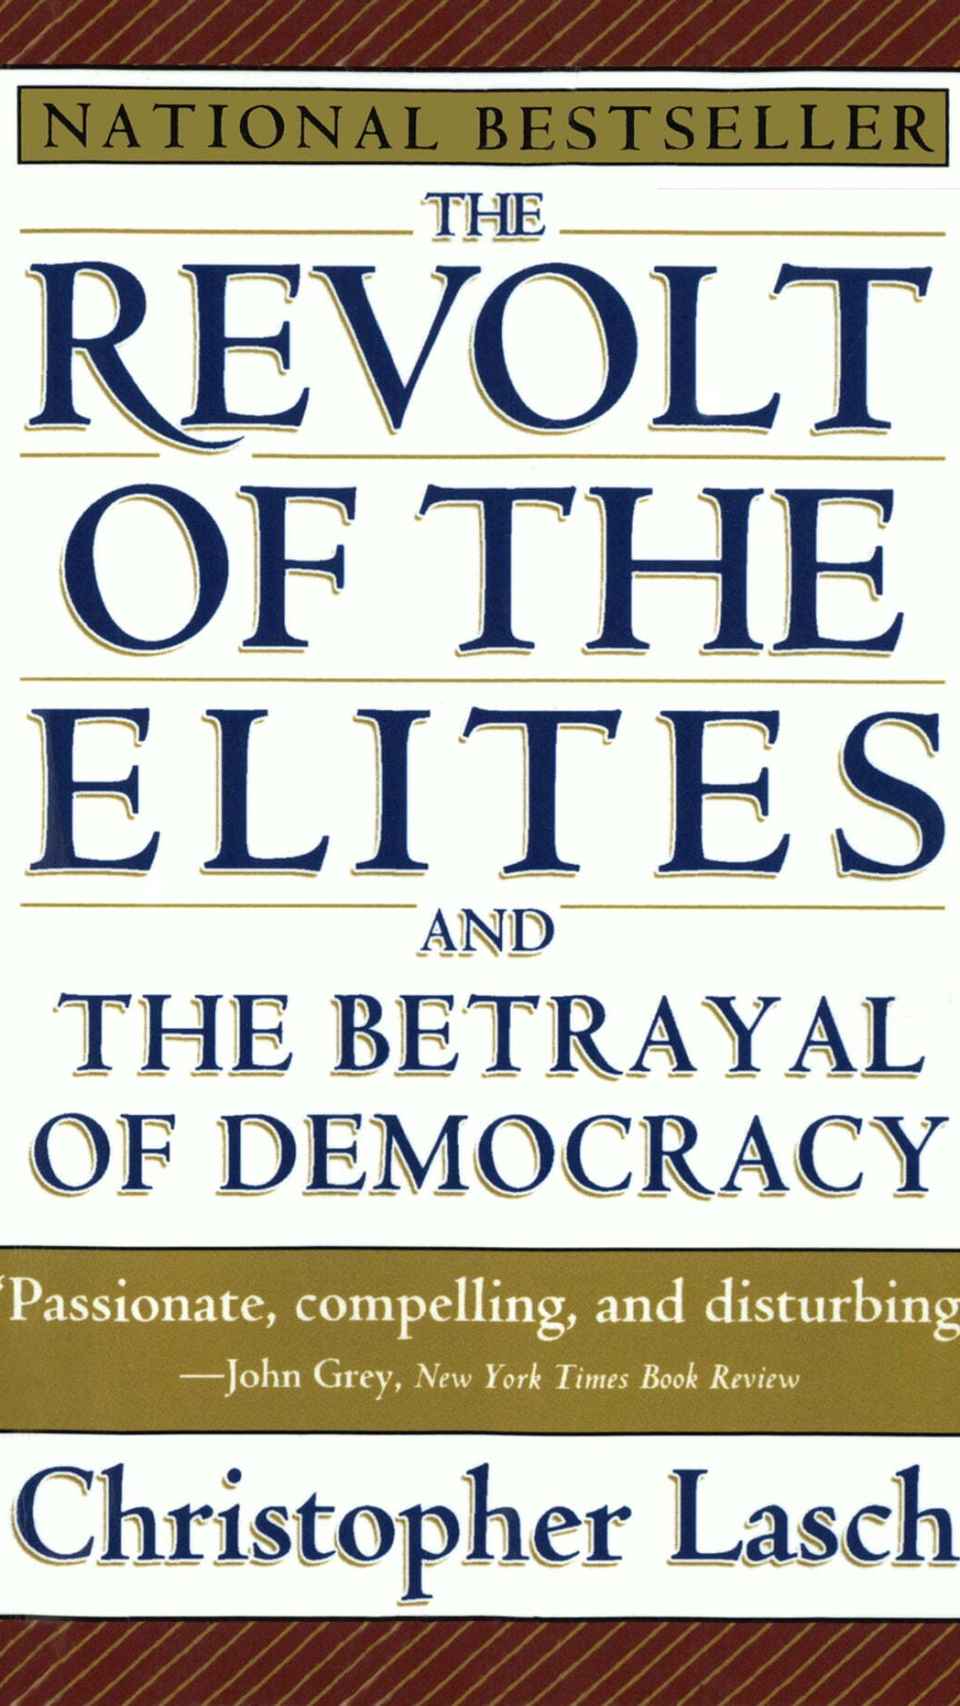 La rebelión de las elites y la traición a la democracia, de Christopher Lasch.